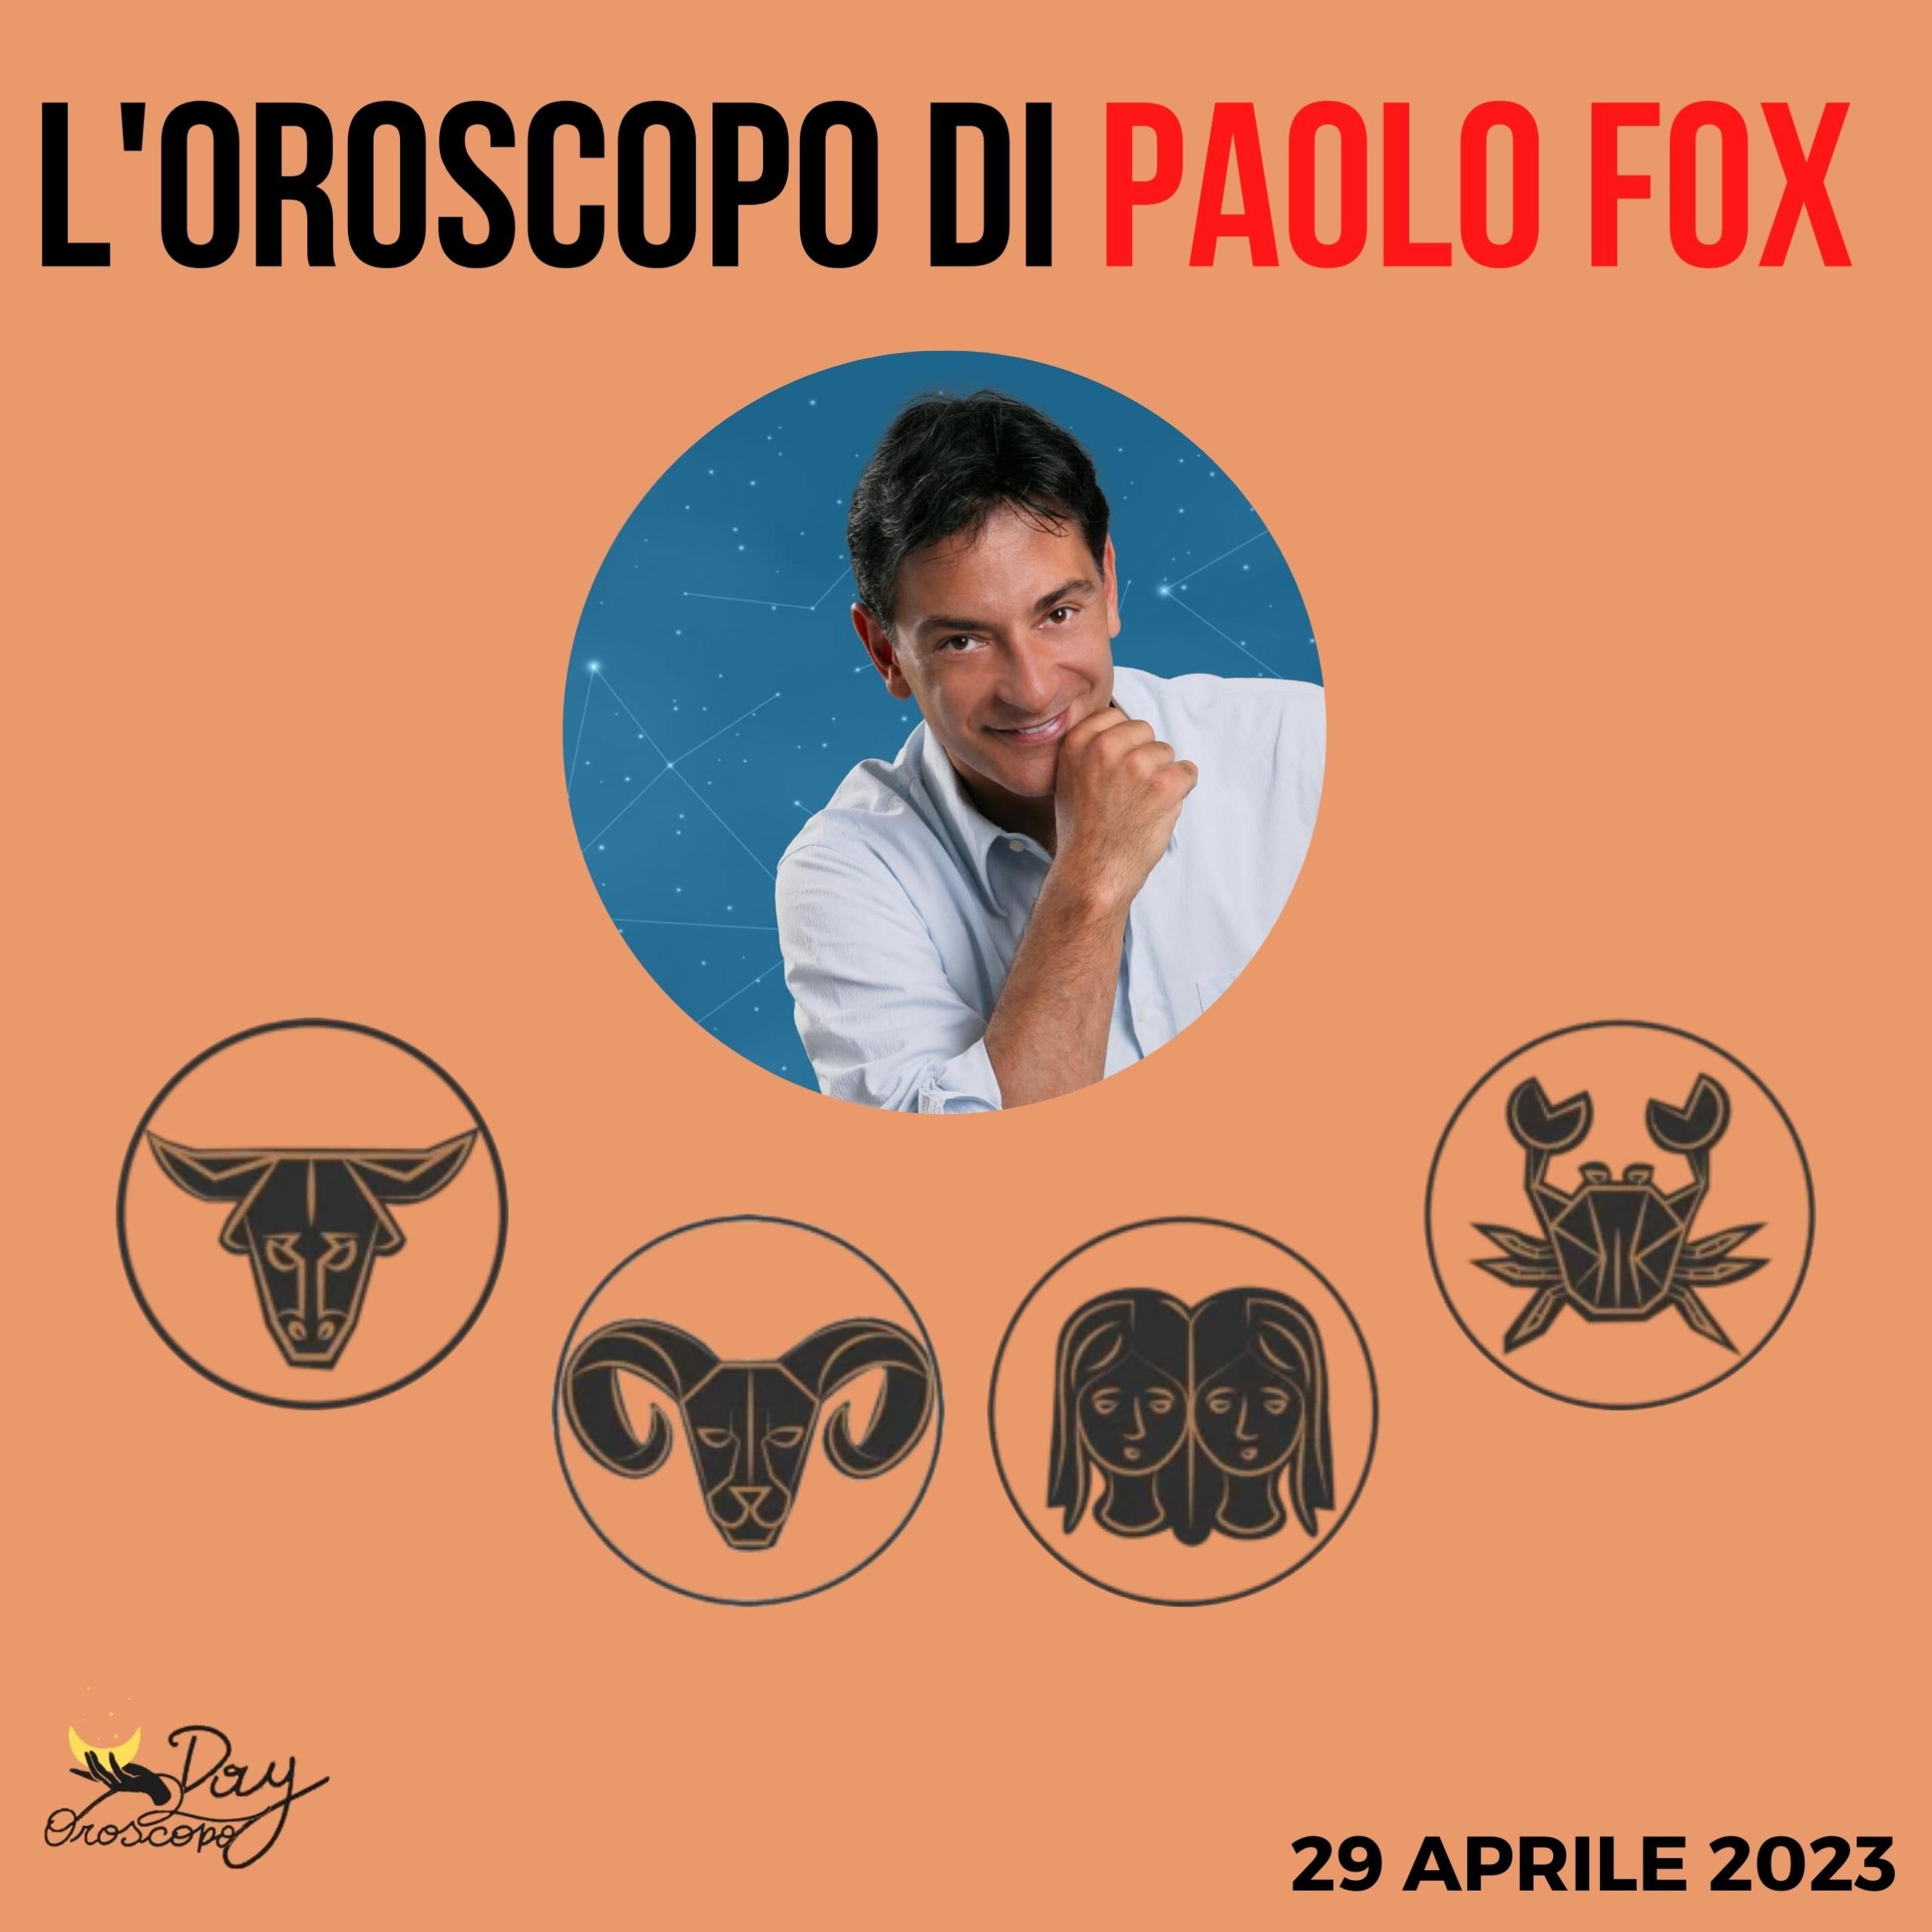 Oroscopo oggi domani Paolo Fox 29 aprile Toro Ariete Gemelli Cancro